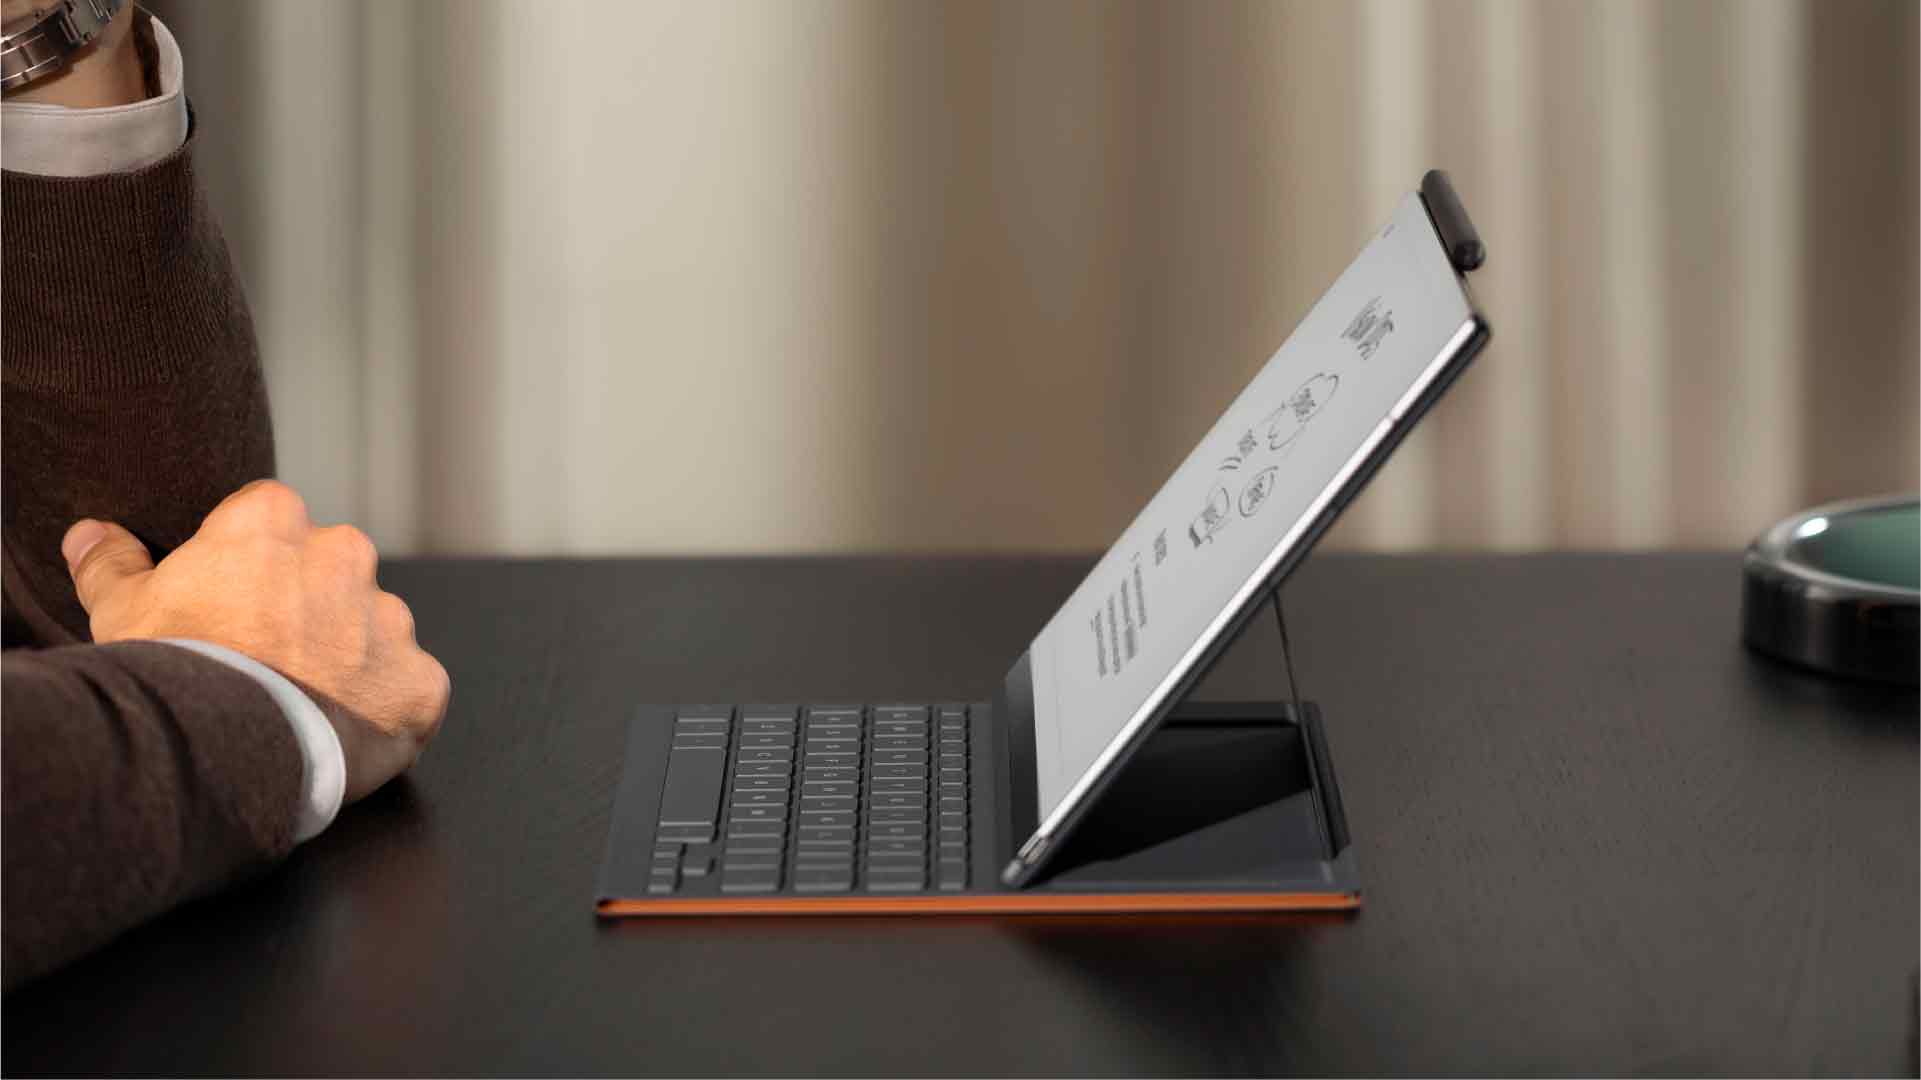 Arriva la tastiera Type Folio per il tablet di carta digitale reMarkable